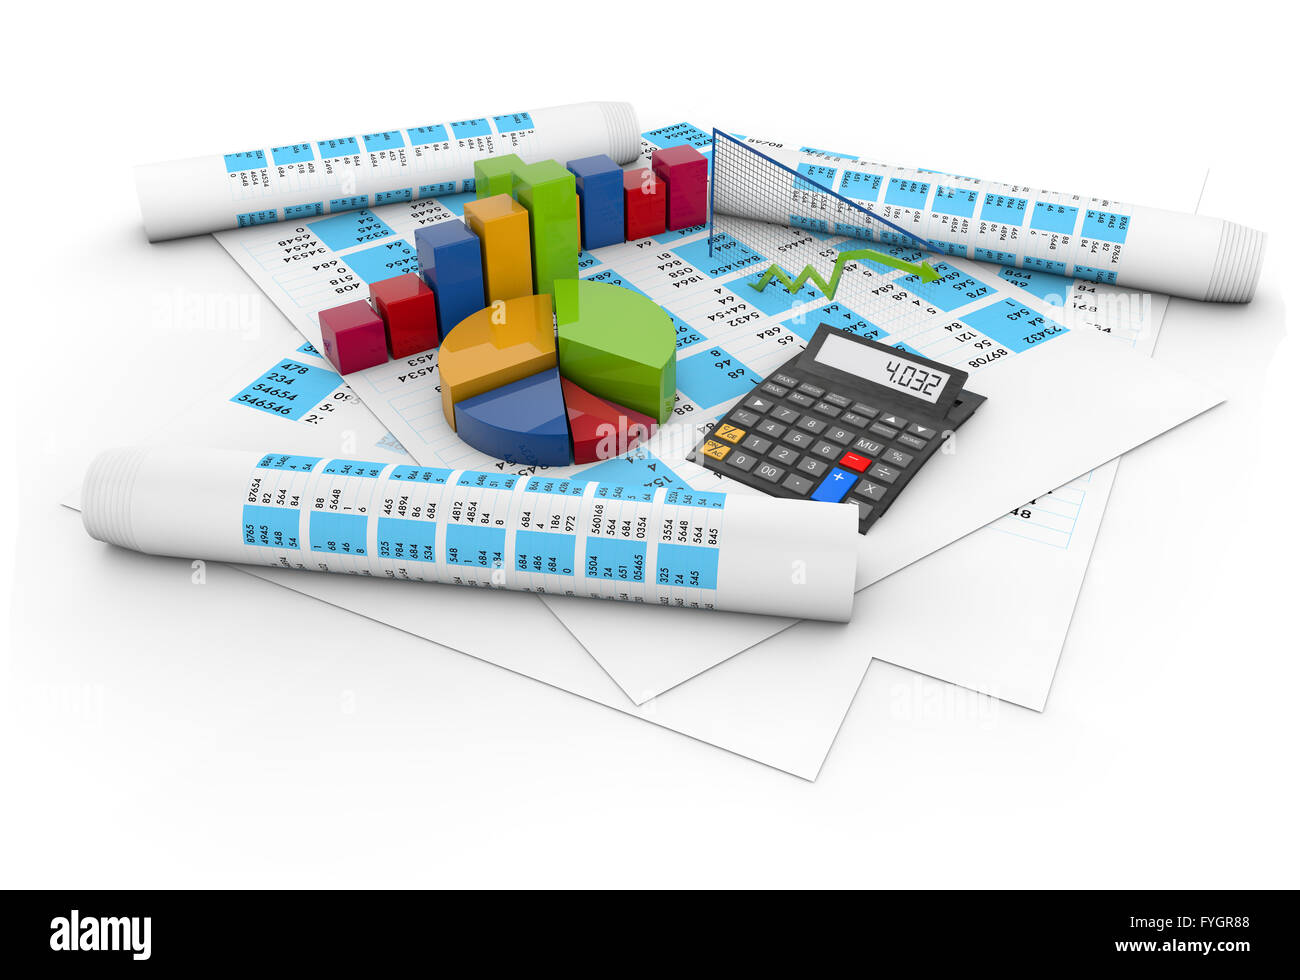 Comptes de soldes concept : calculatrice, des graphiques colorés et un stylo plus de documents comptables isolé sur fond blanc Banque D'Images